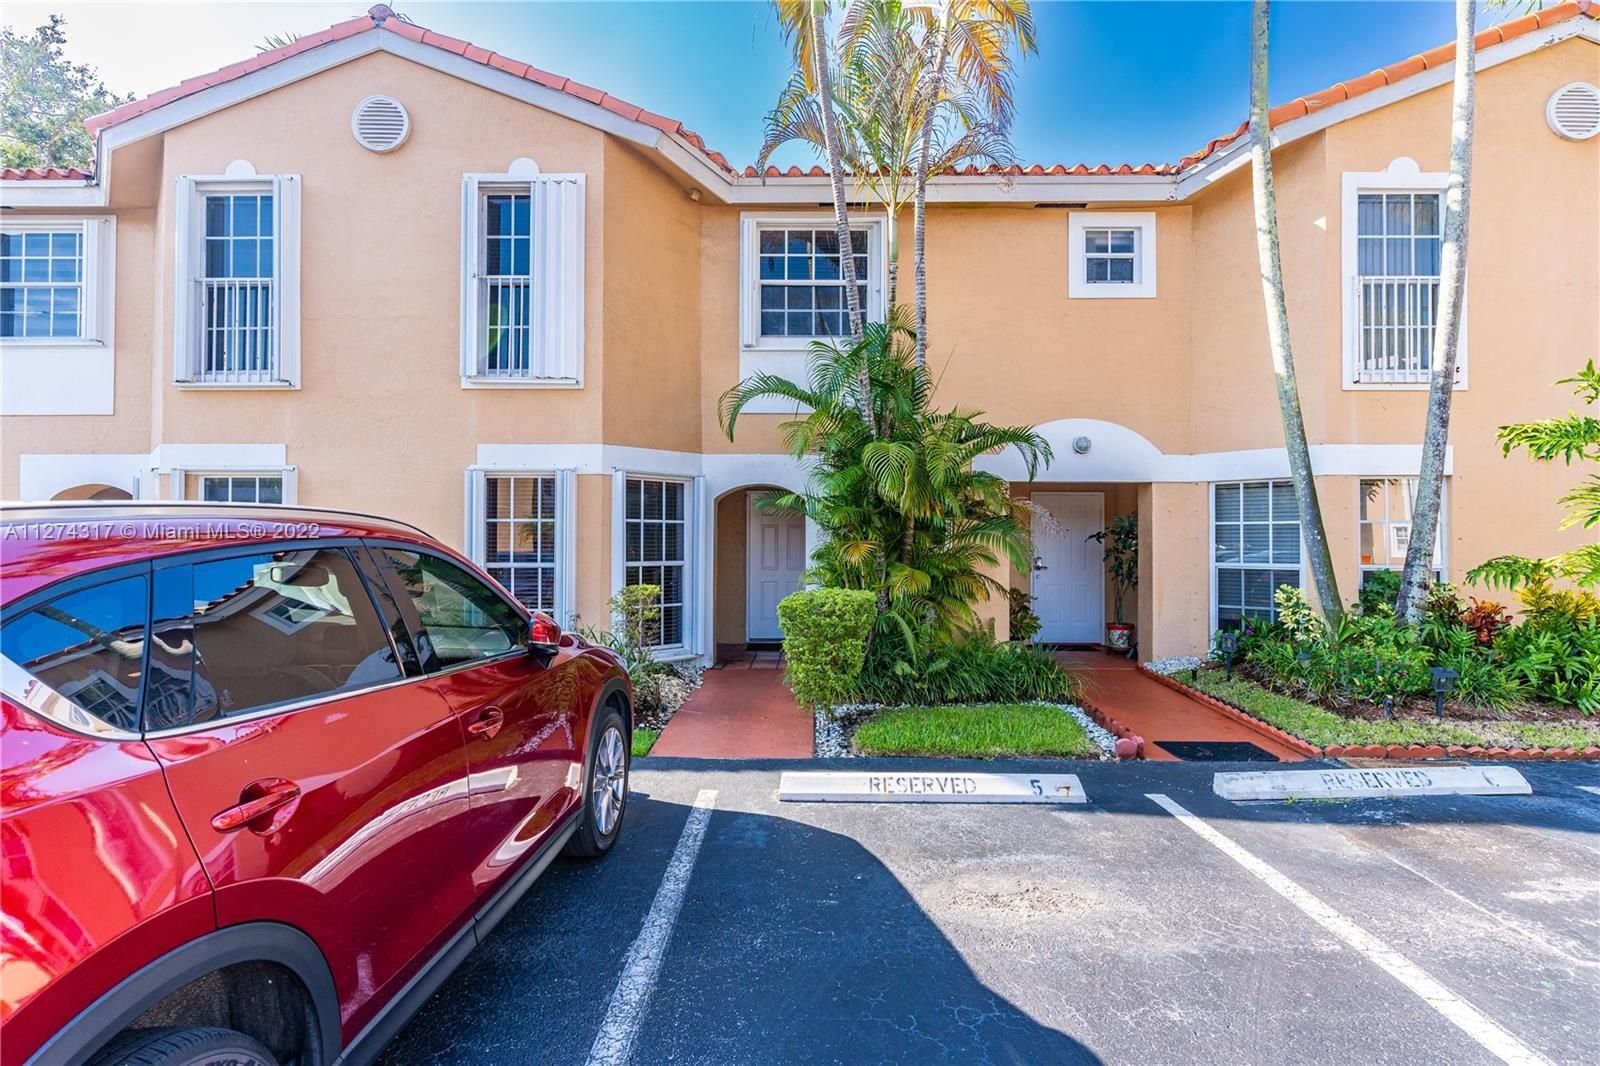 Real estate property located at 14245 57th Ln #9-2, Miami-Dade County, Miami, FL